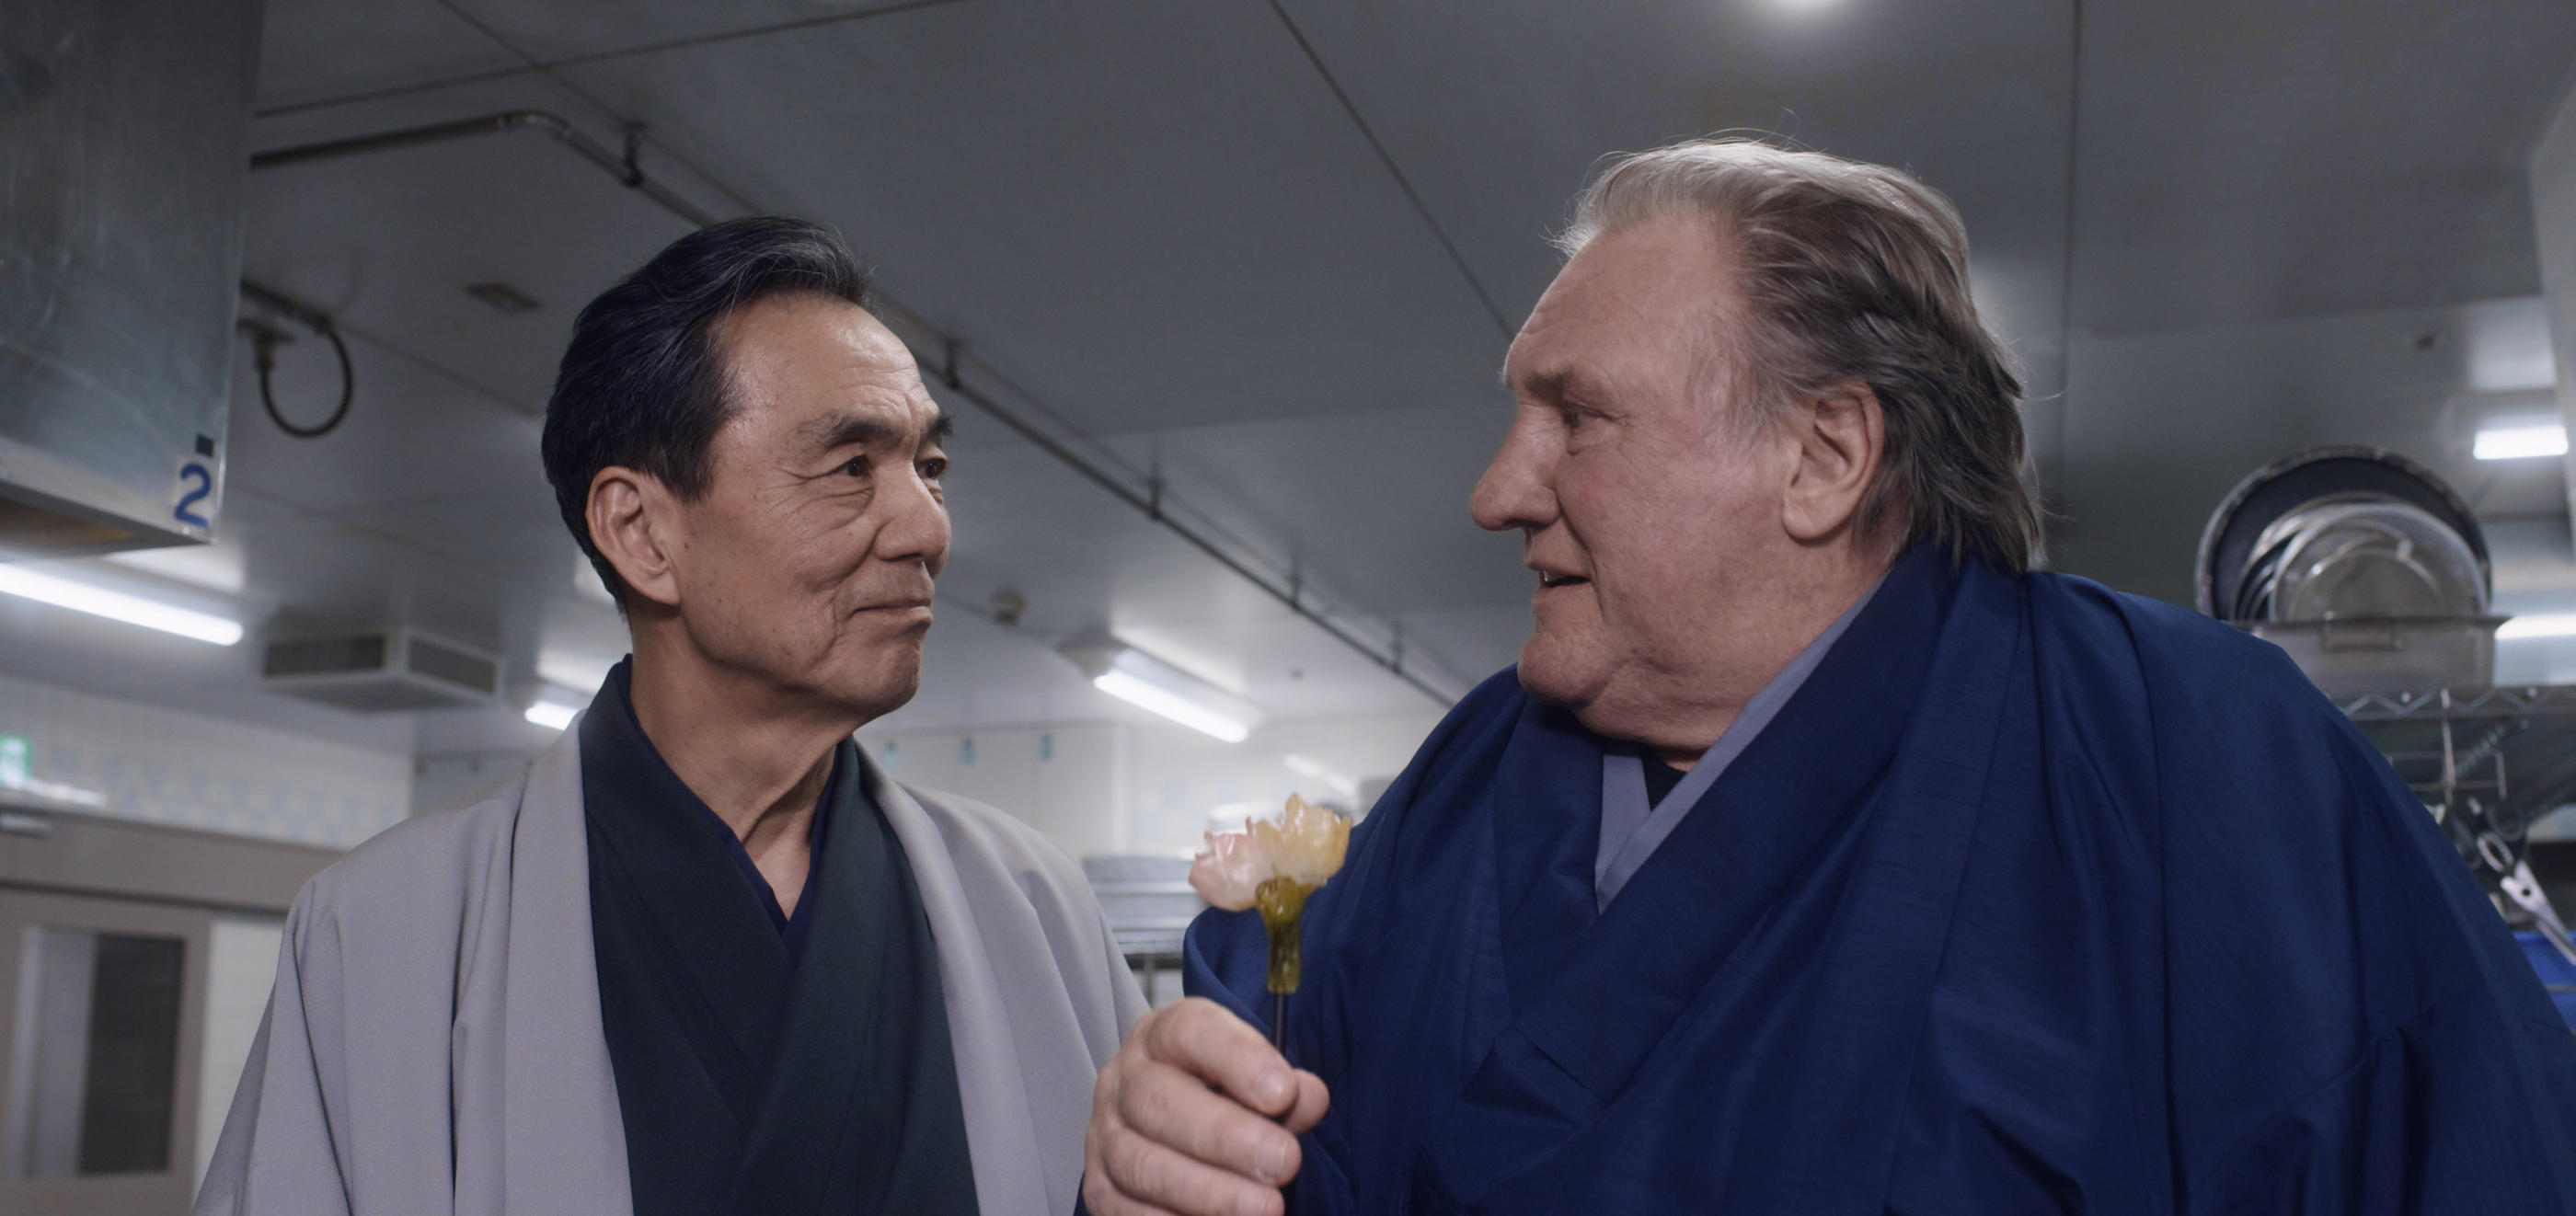 Dans « Umami », un chef étoilé, Gérard Depardieu, part au Japon pour retrouver le chef qui lui a ravi la première place d’un concours culinaire quarante ans plus tôt. Zinc